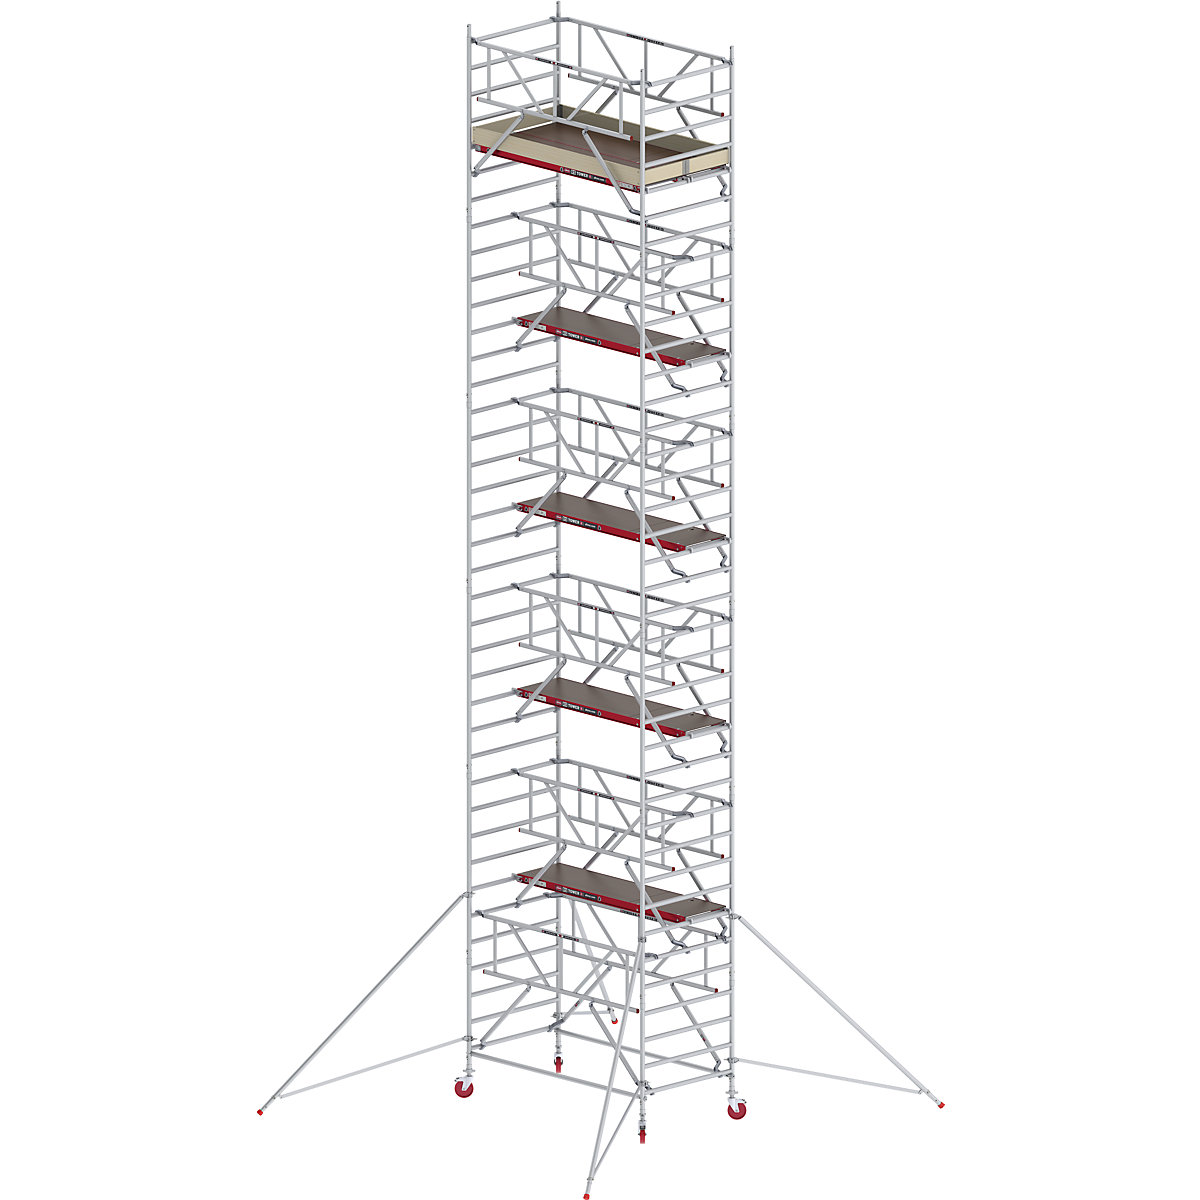 Schelă mobilă RS TOWER 42 lată cu Safe-Quick® – Altrex, platformă din lemn, lungime 2,45 m, înălțime de lucru 12,2 m-5